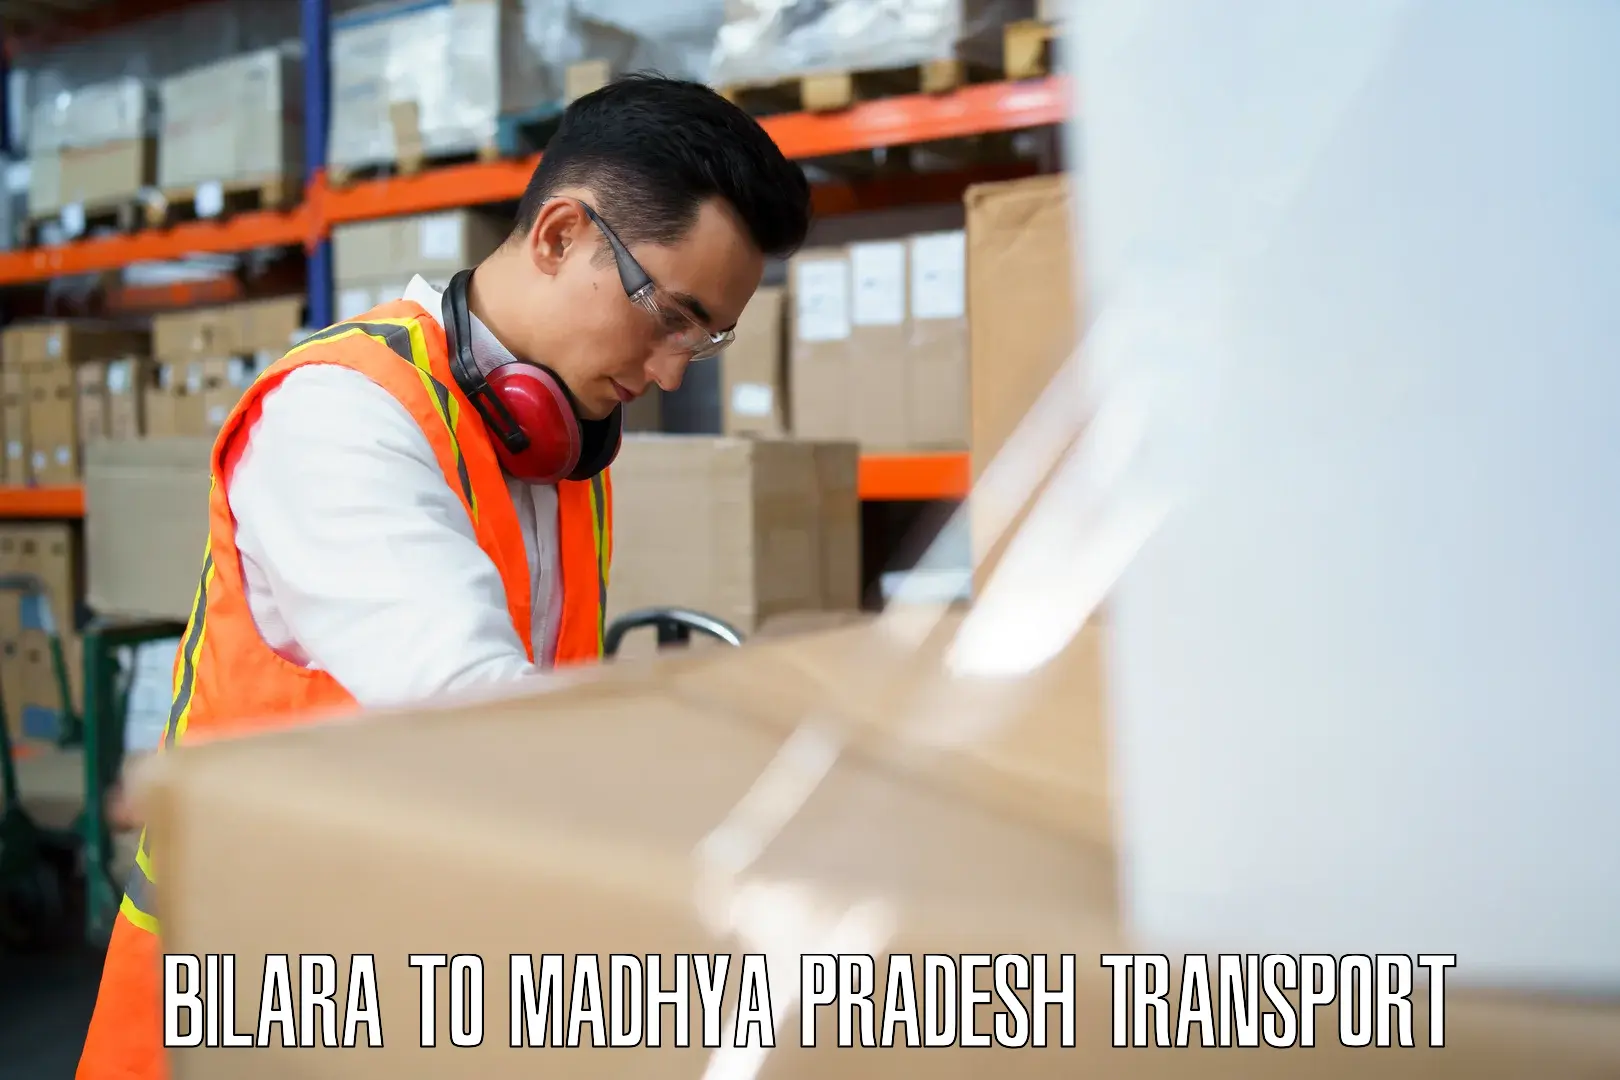 Daily parcel service transport Bilara to Ganj Basoda